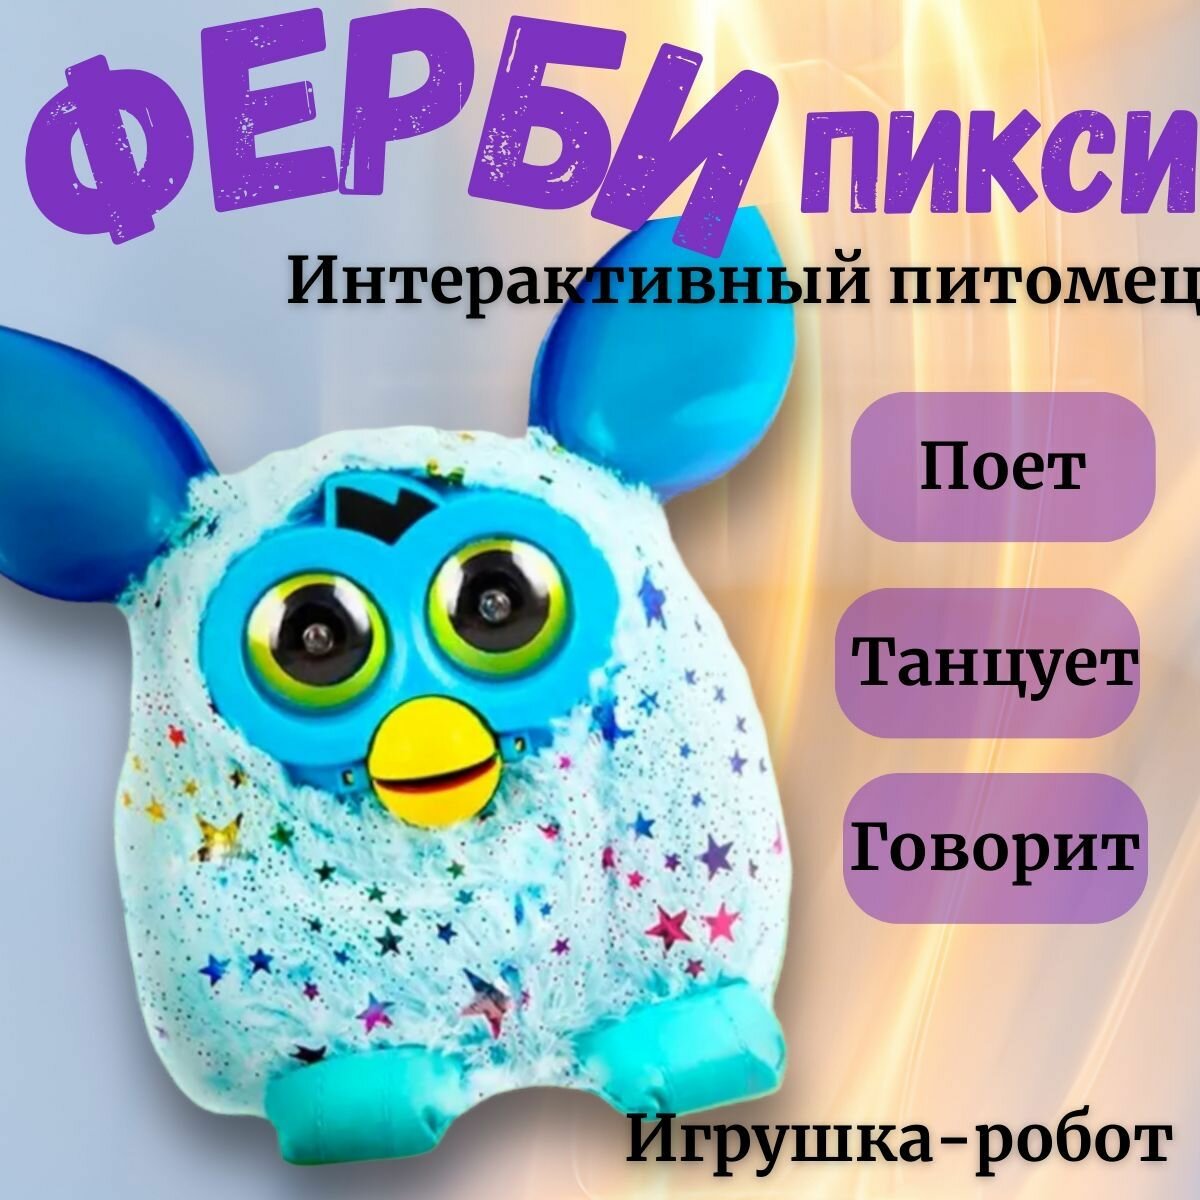 Фёрби по кличке Пикси, игрушка-робот для девочек и мальчиков, развивающая, интерактивная игрушка, лучший друг Furby, подарок на день рождение 23 февраля 8 марта